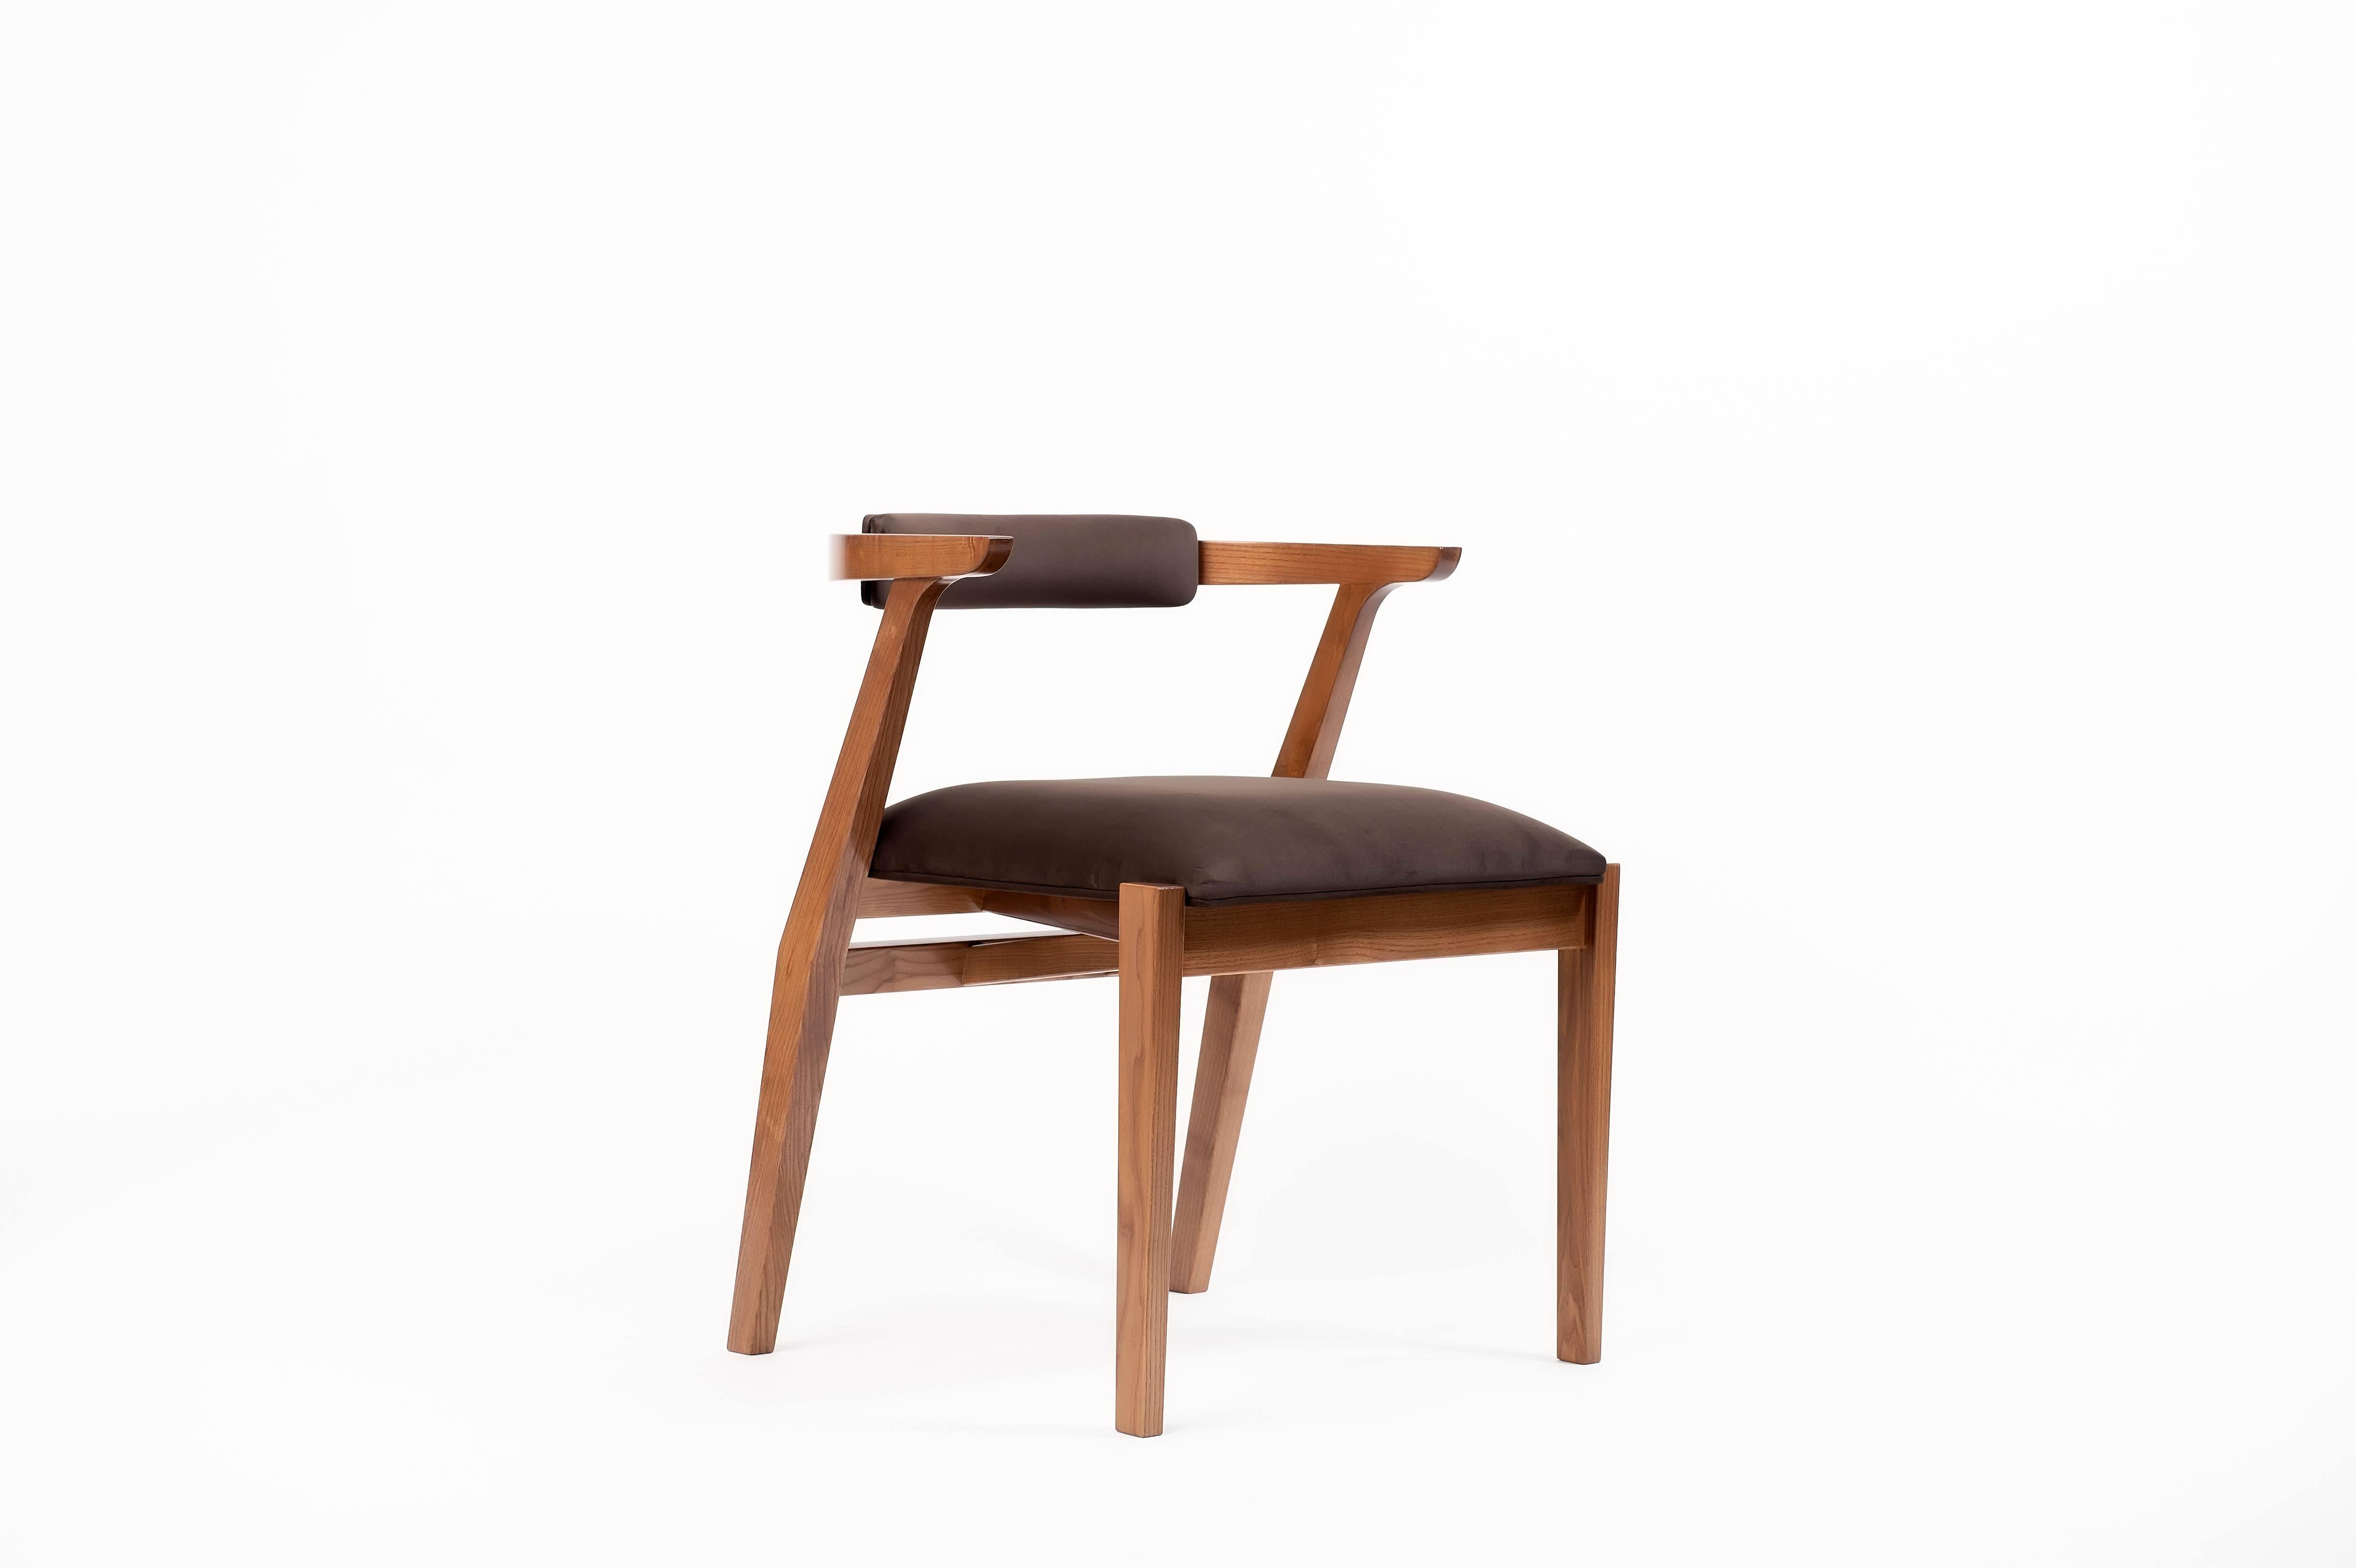 Vous cherchez la chaise parfaite pour votre table Ellis ? La chaise Ellis offre un confort extrême et une modernité exceptionnelle à tout espace. Avec ses multiples tons de couleurs et son coussin à angle large, la chaise Ellis est une belle pièce